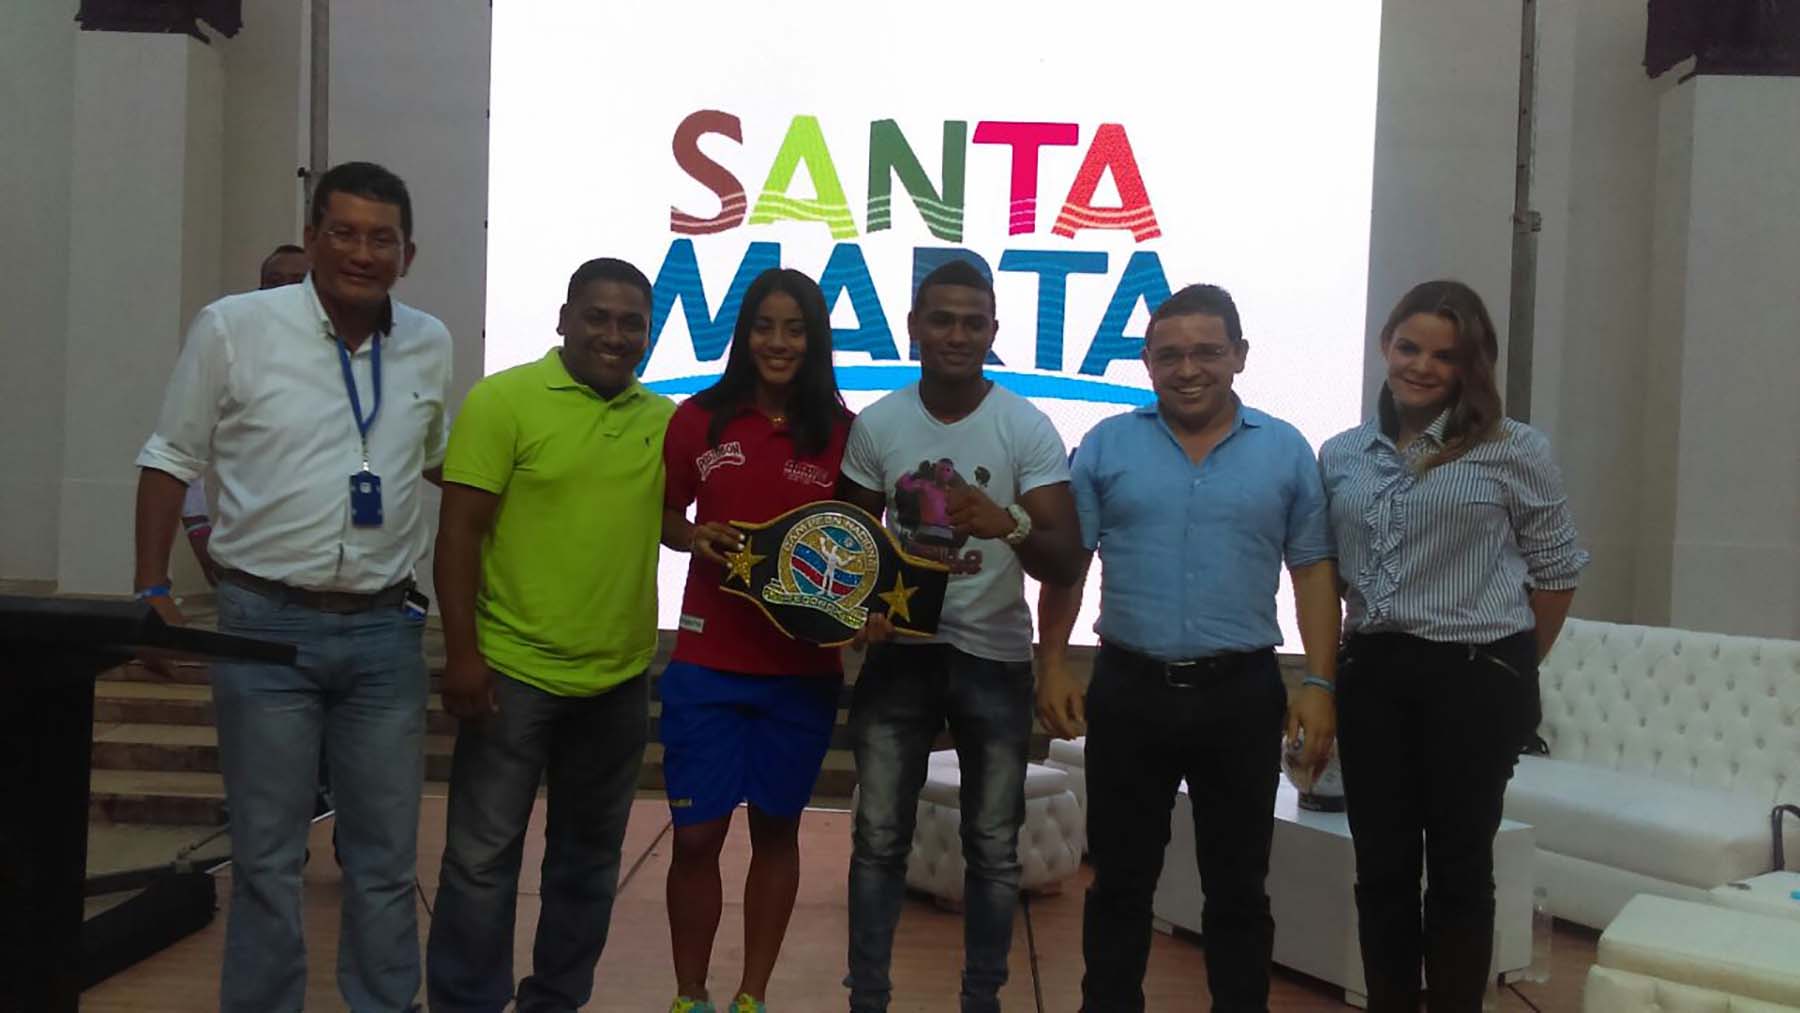  Rubén Cervera, Kerstinck Sarmiento, Gary Parejo, fueron los deportistas destacados que participaron del acto en la Quinta de San Pedro Alejandrino.